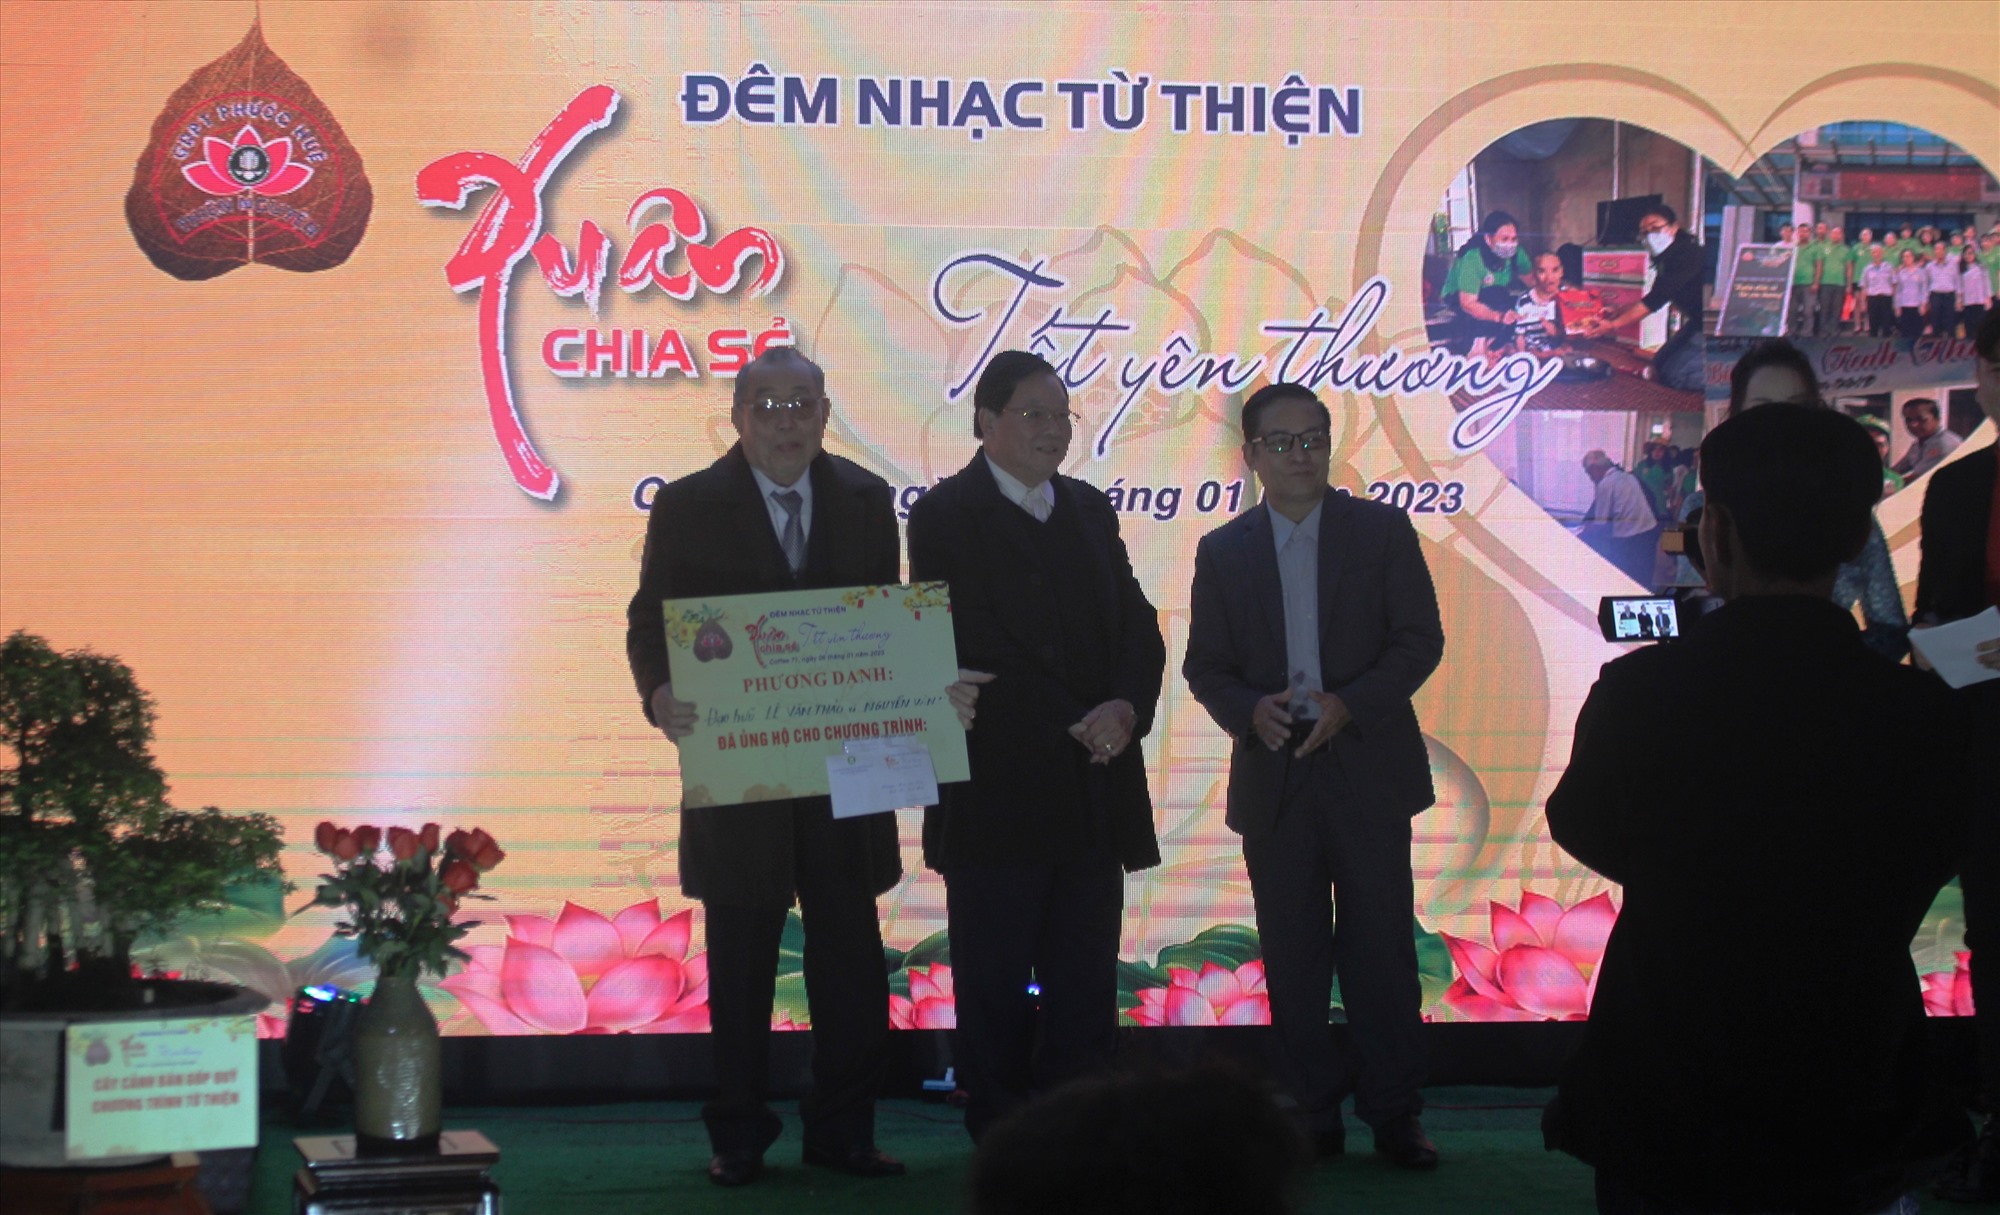 Huynh trưởng cấp Tấn Lê Văn Thảo và đạo hữu Nguyễn Văn Lực trao số tiền ủng hộ Chương trình Xuân chia sẻ-Tết yêu thương